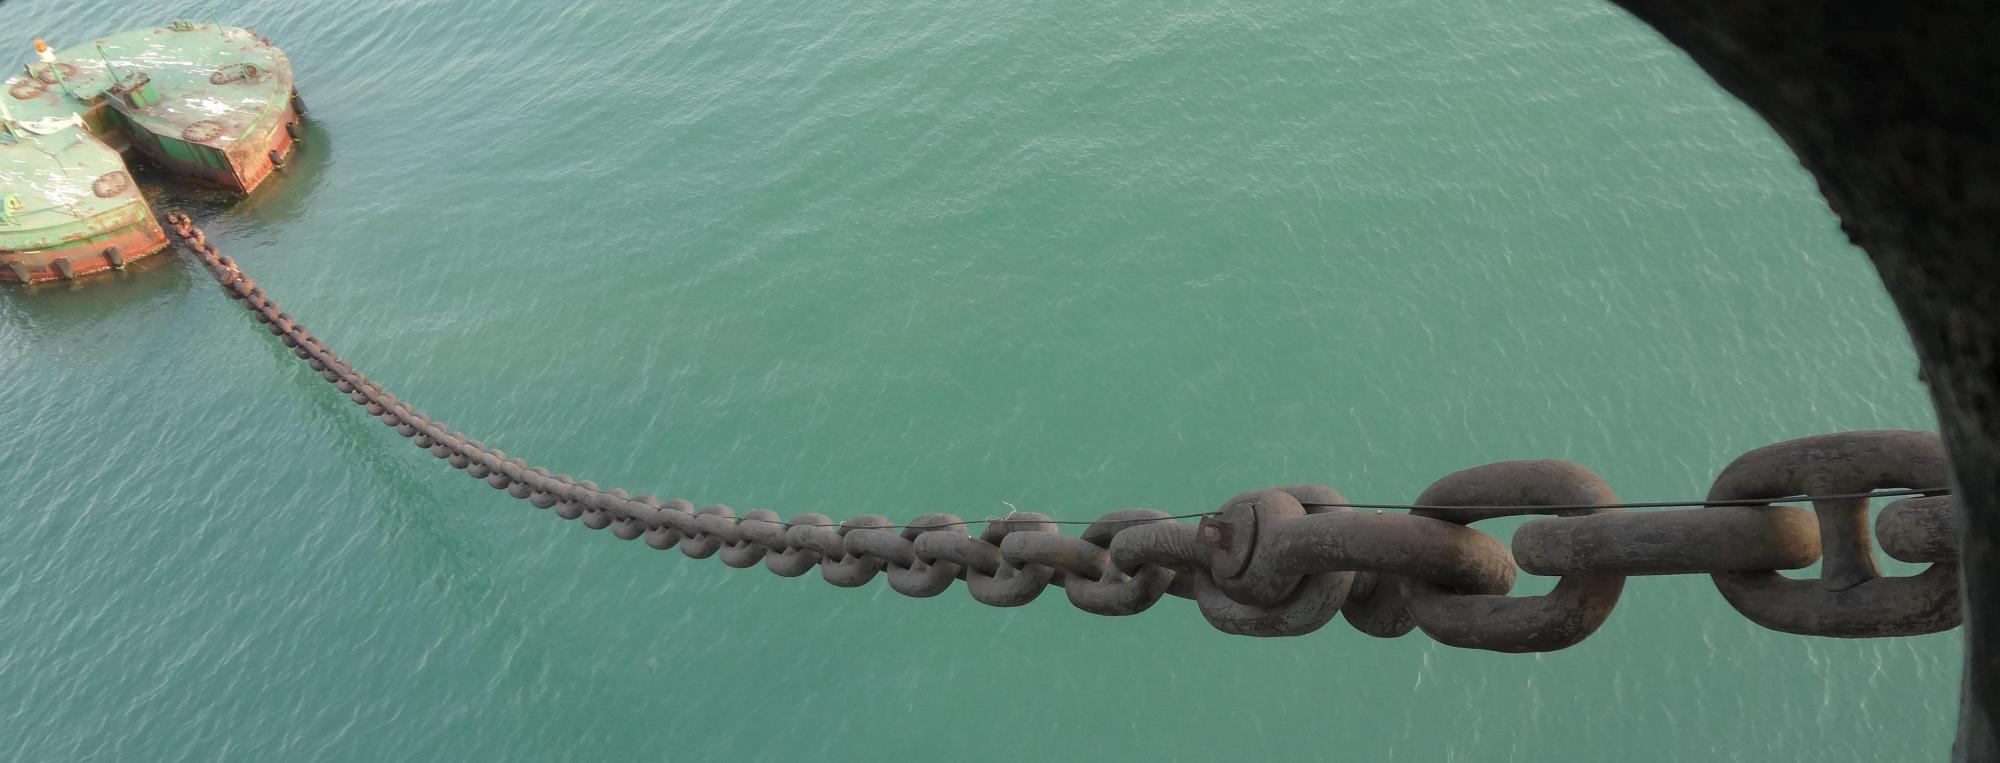 军舰的锚链有多长?在深海的时候,船锚也能够触到海底吗?